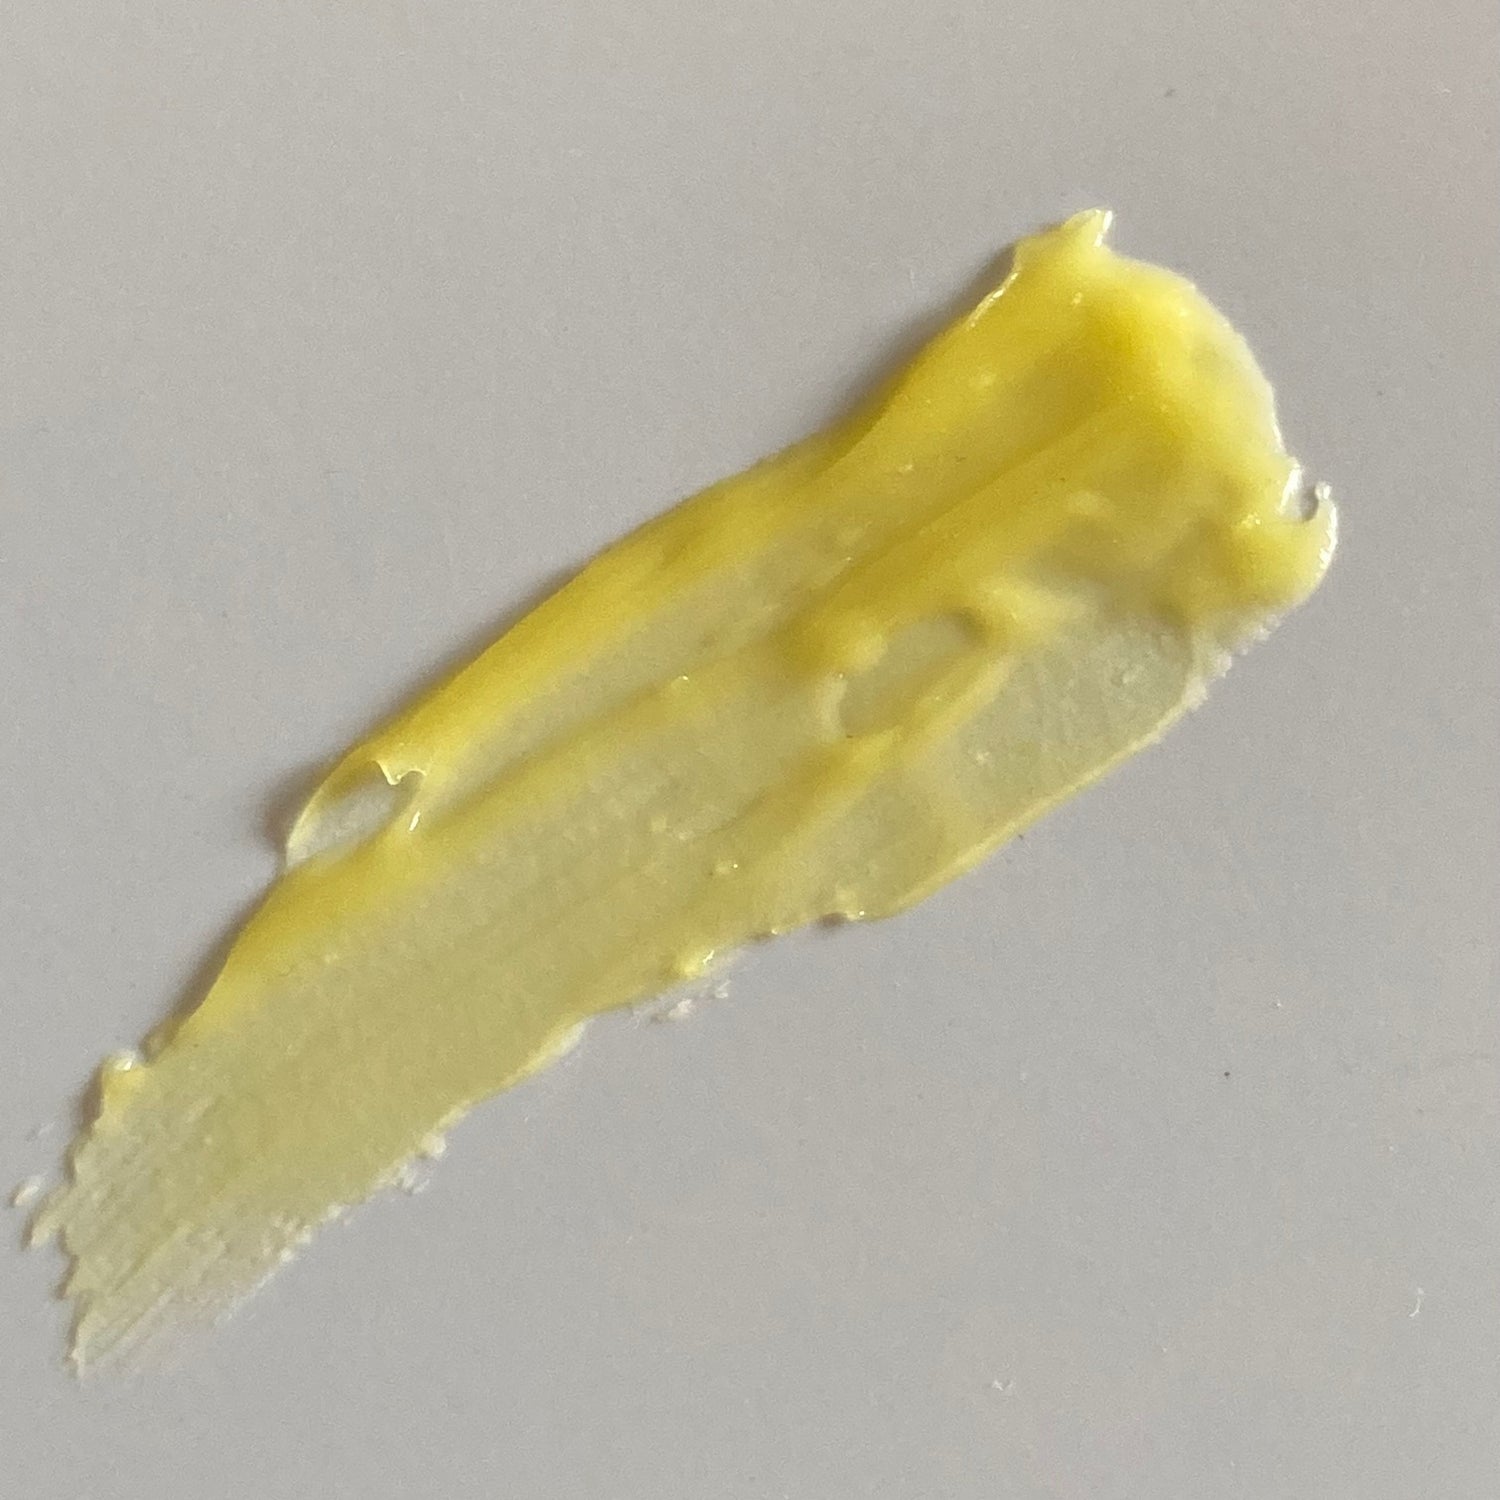 Smear of yellow Borage & Calendula Balm on white tile